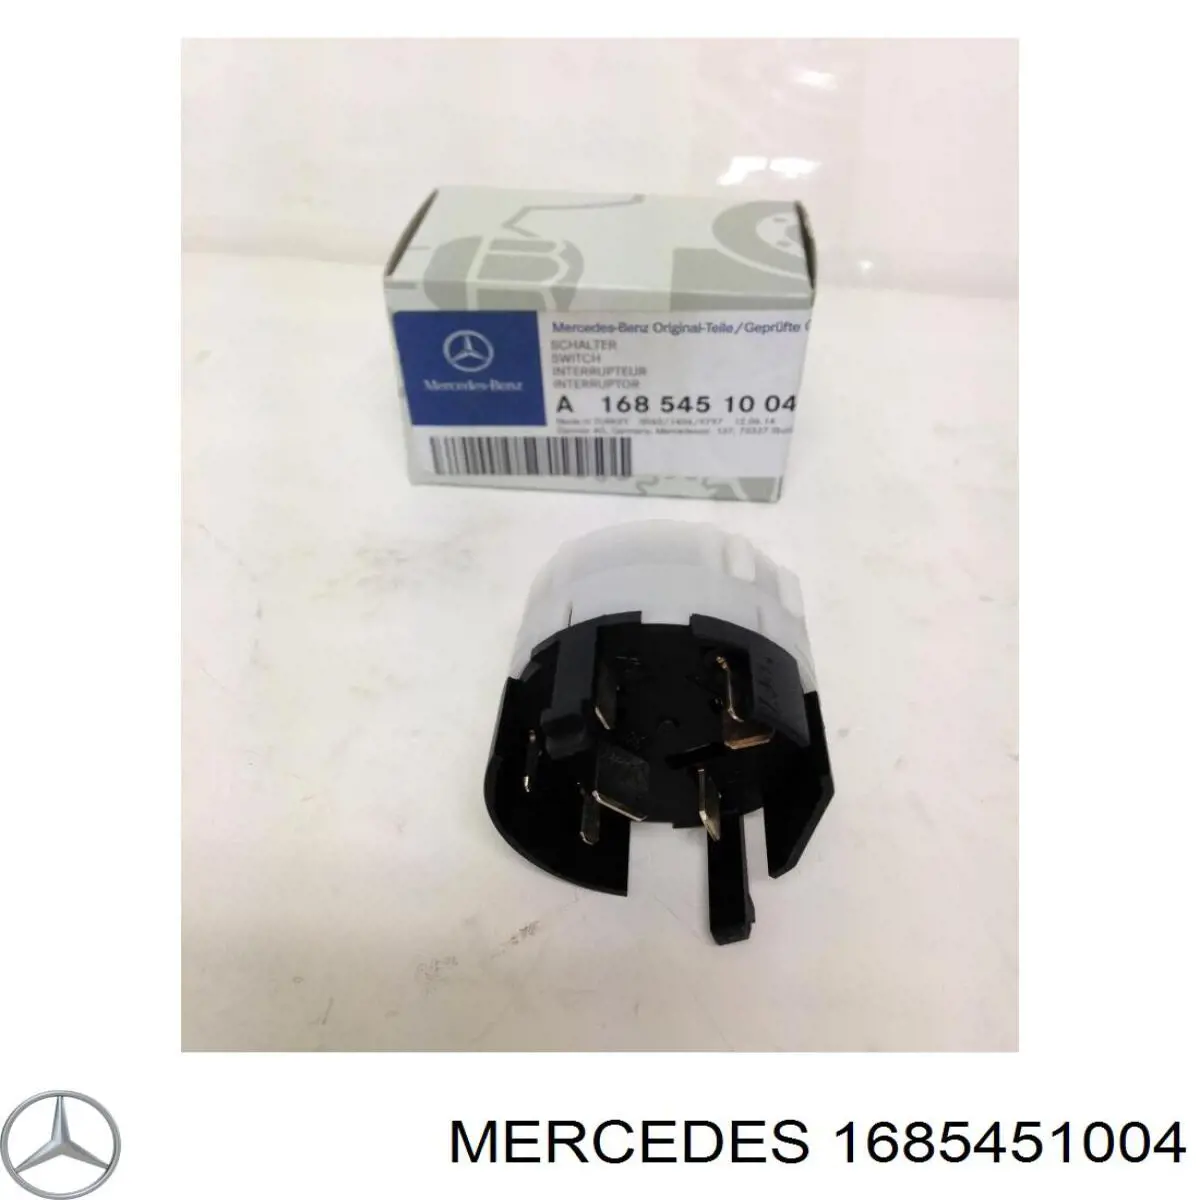 Как купить запчасть Mercedes 2105450208 и ее аналоги на портале Авто.про